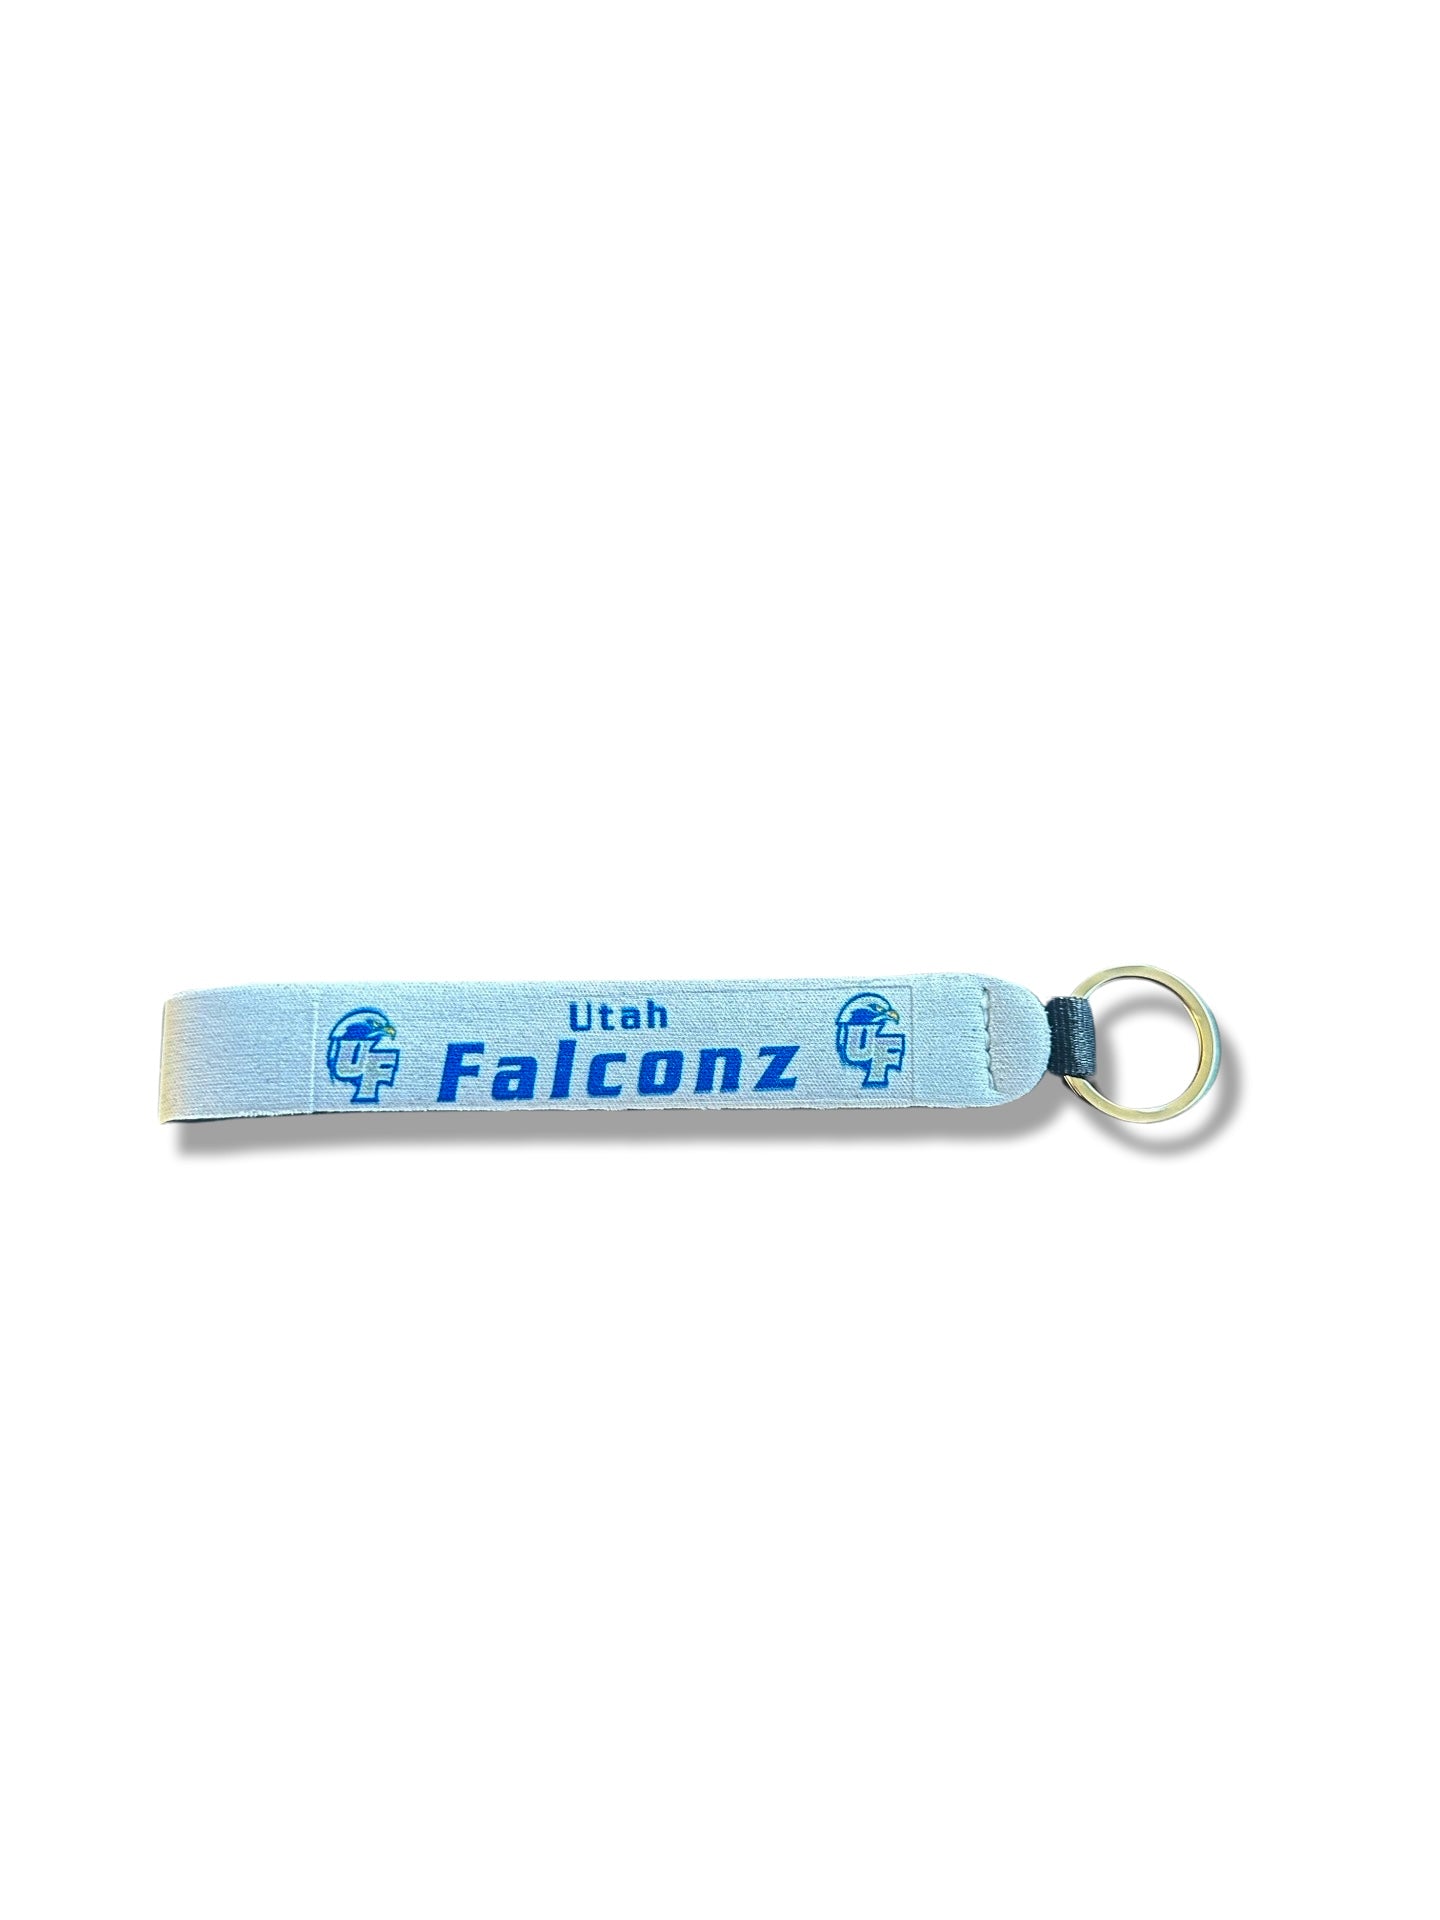 Falconz Wristlet Keychain